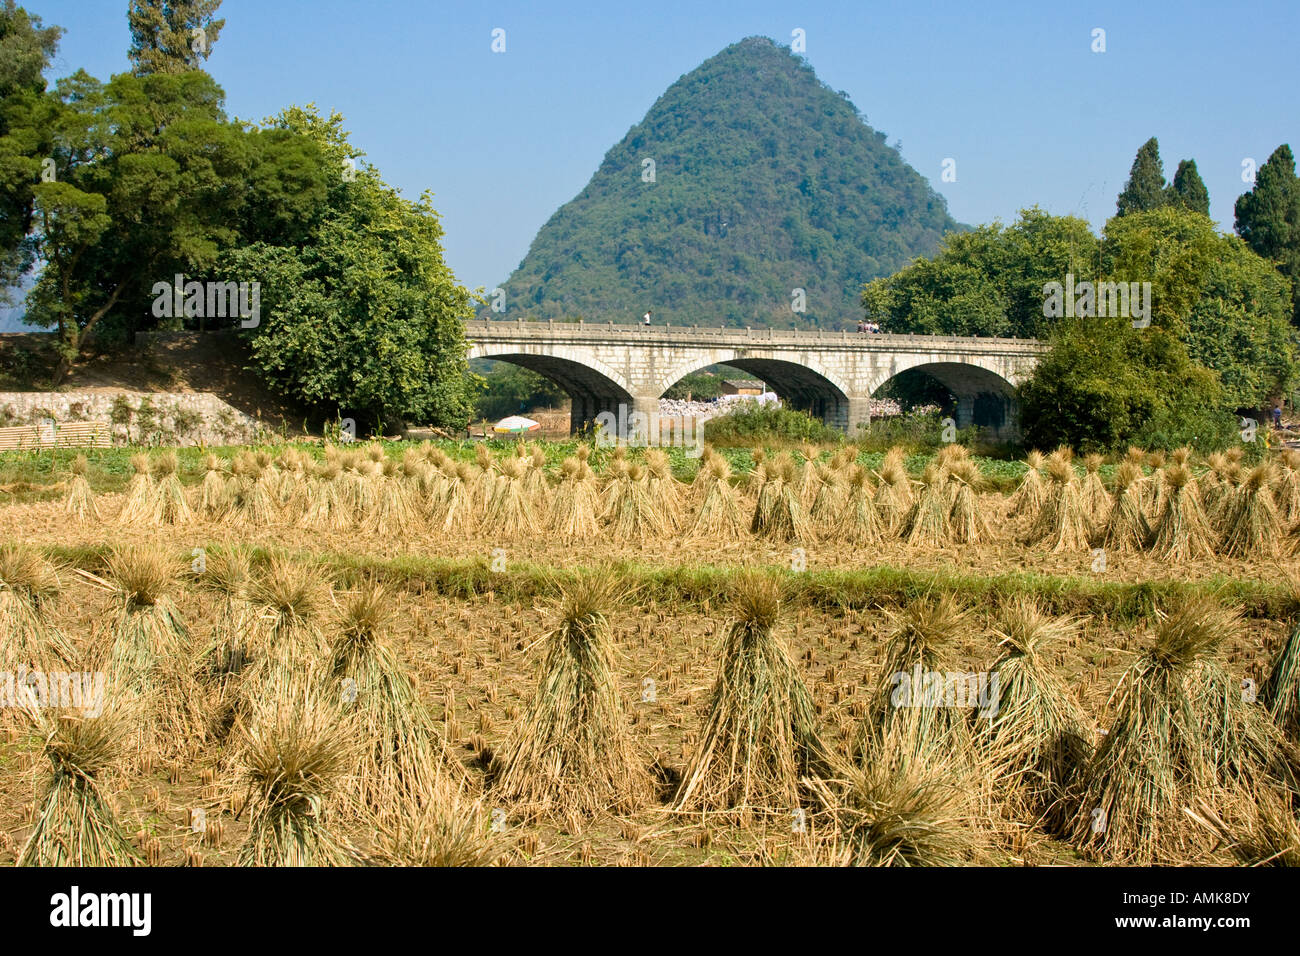 La récolte de riz de l'agriculture chinois Rural calcaire Scène Yangshuo Chine Guangxi Province Karts Banque D'Images